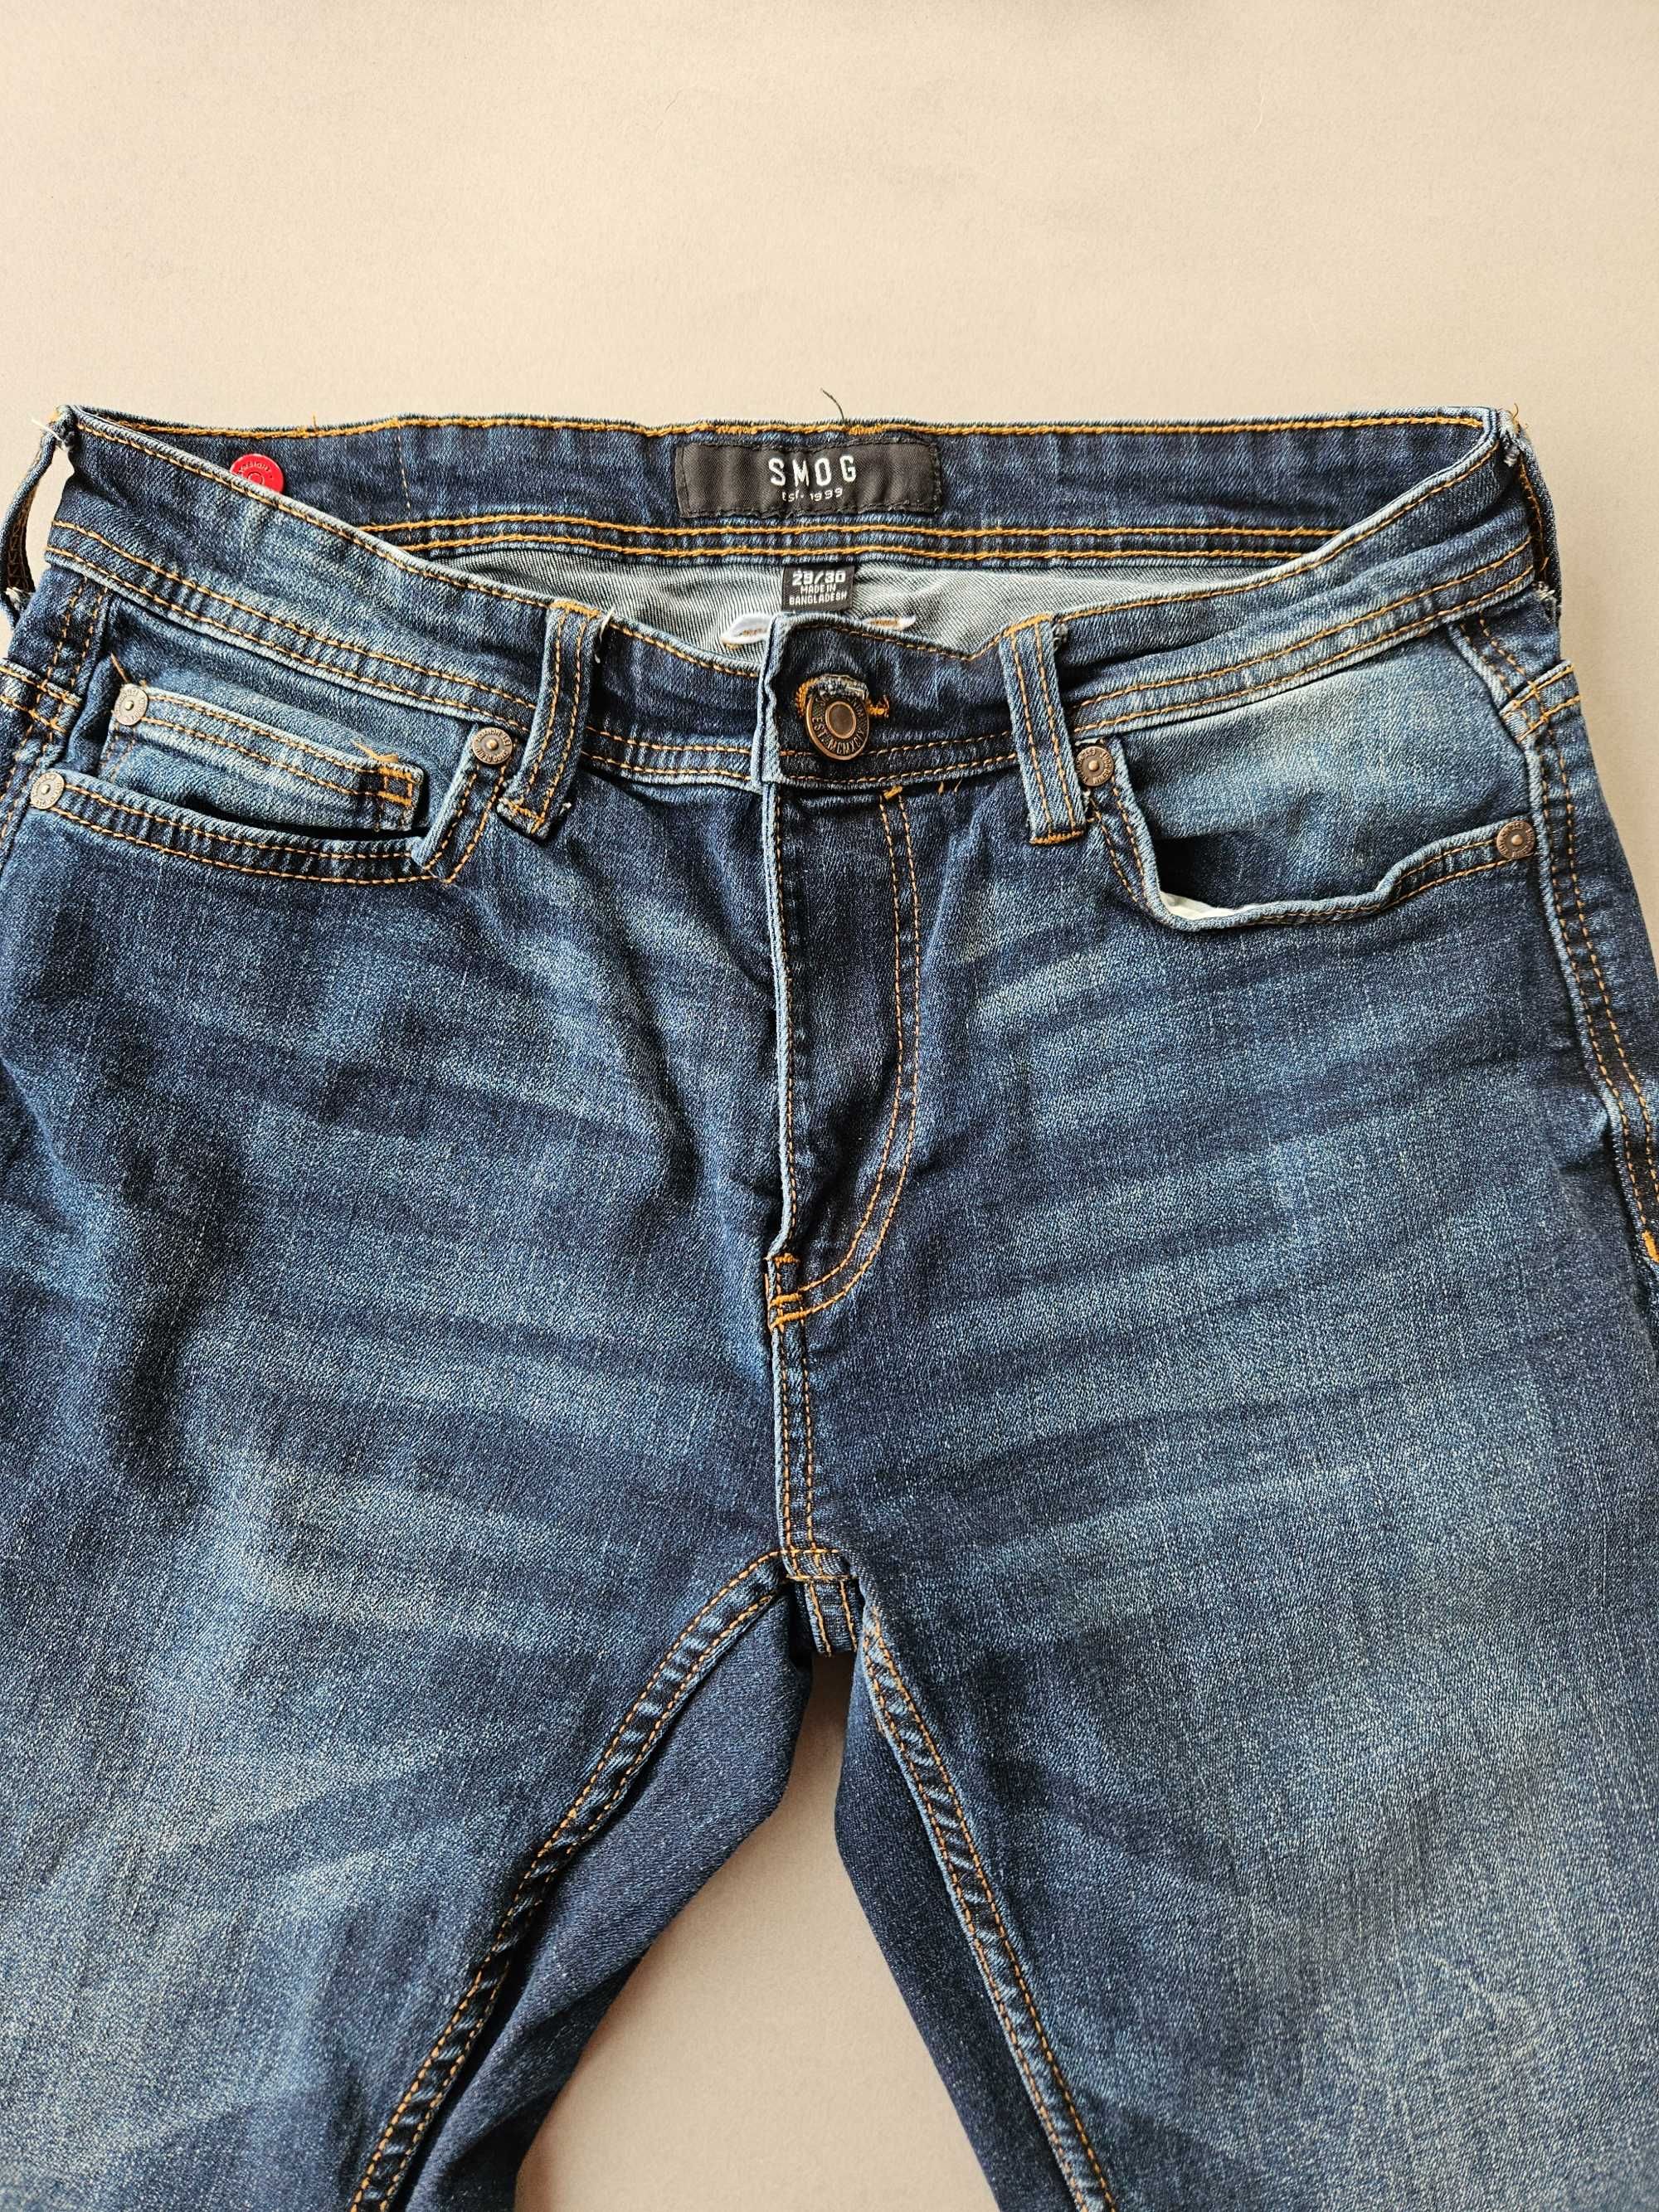 Spodnie jeans męskie 29/30 New Yorker SMOG